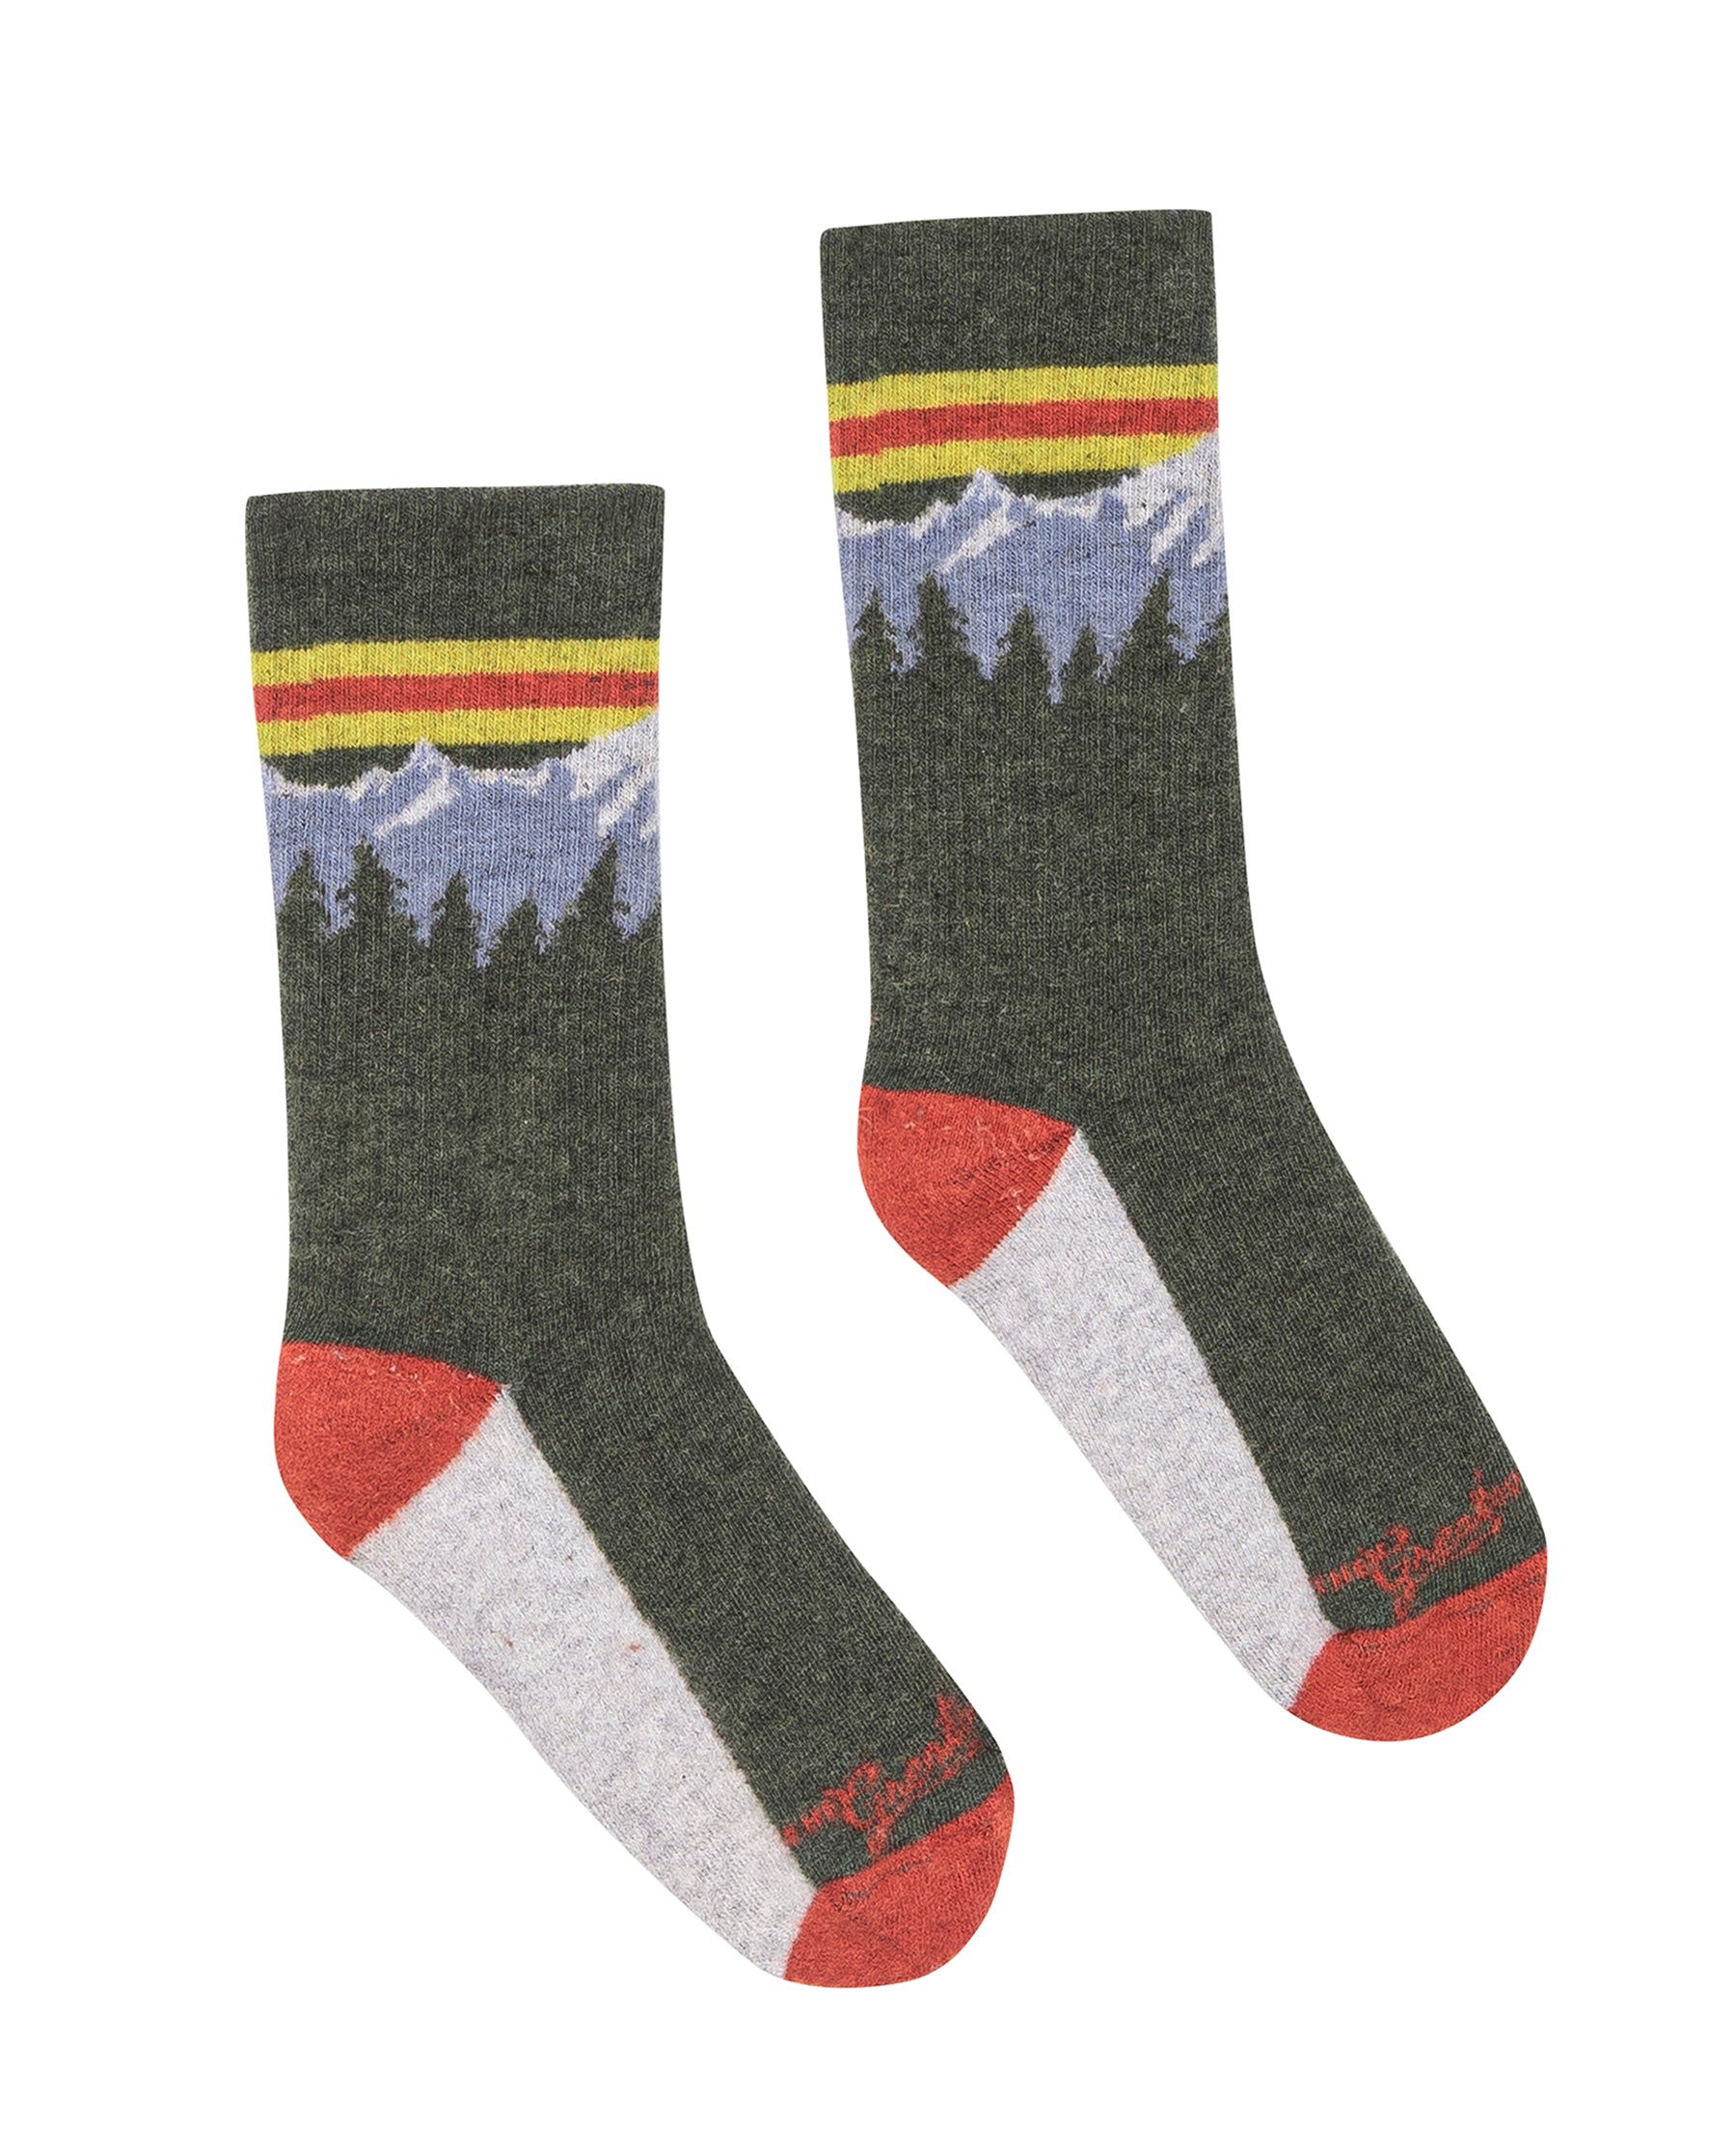 The Ridge Runner Sock. -- Evergreen